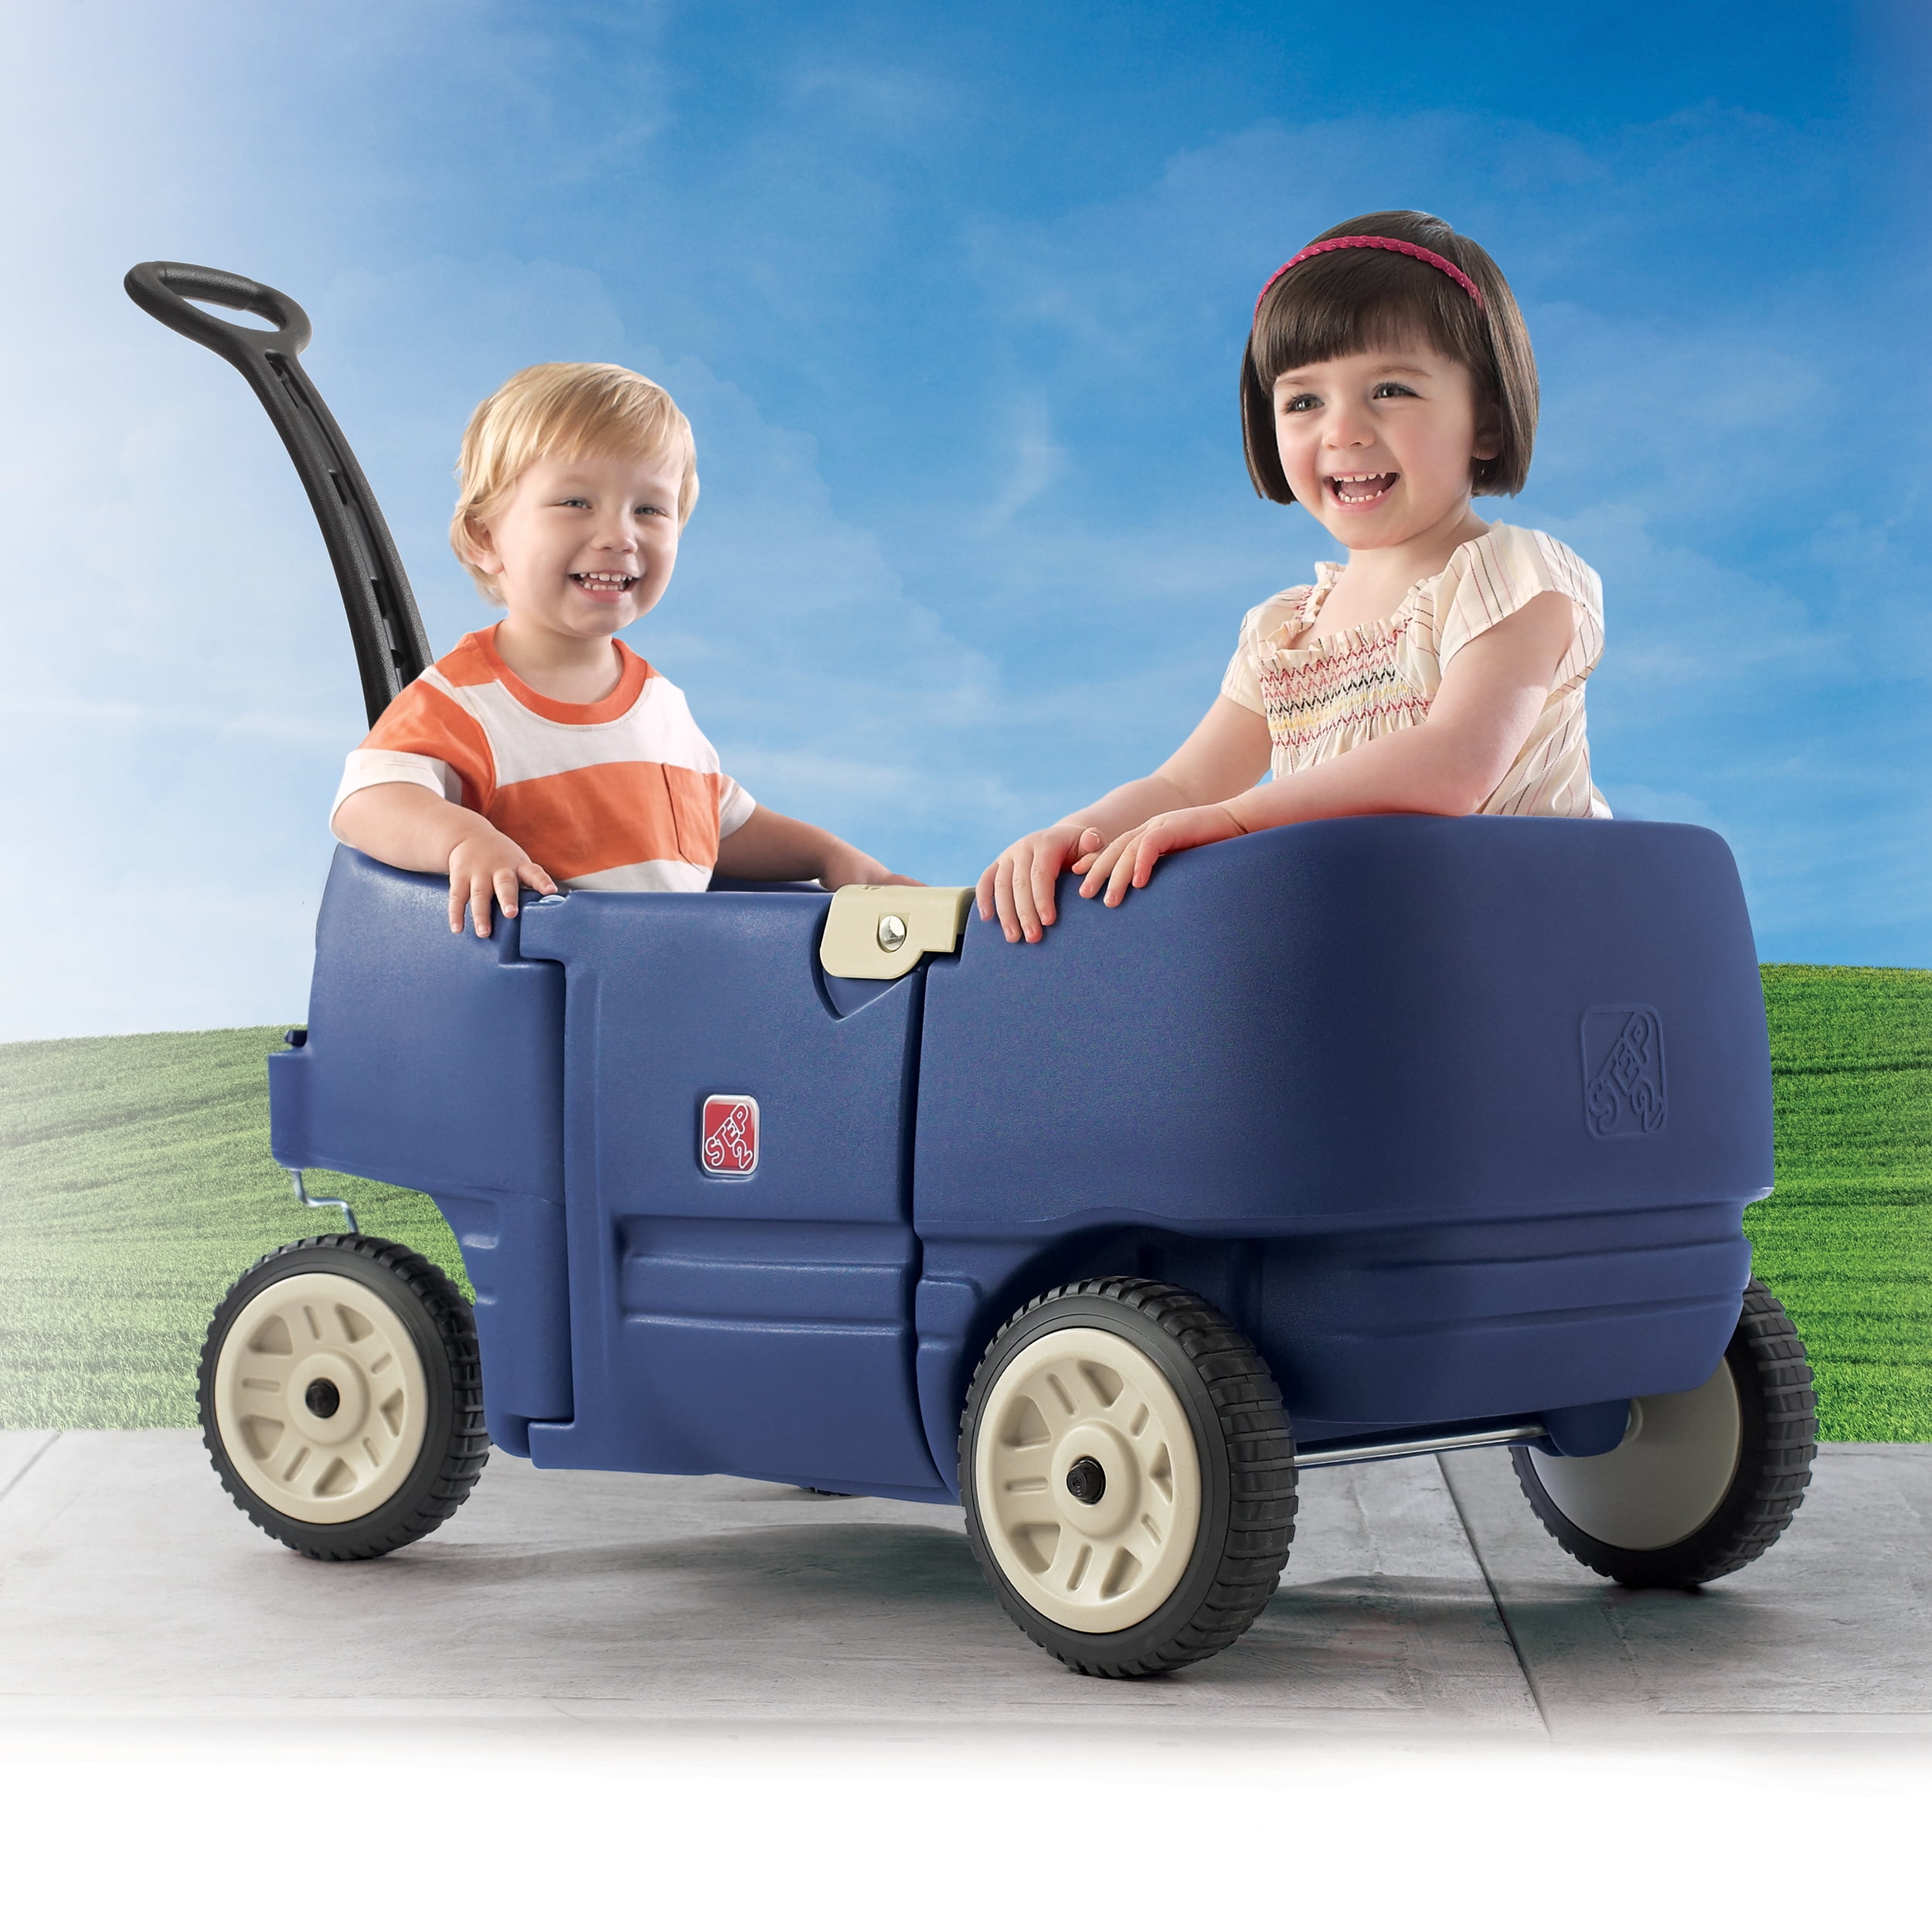 Chariot en plastique rouge pour 2 enfants Neighborhood Step2 - Bleu - Kiabi  - 143.16€